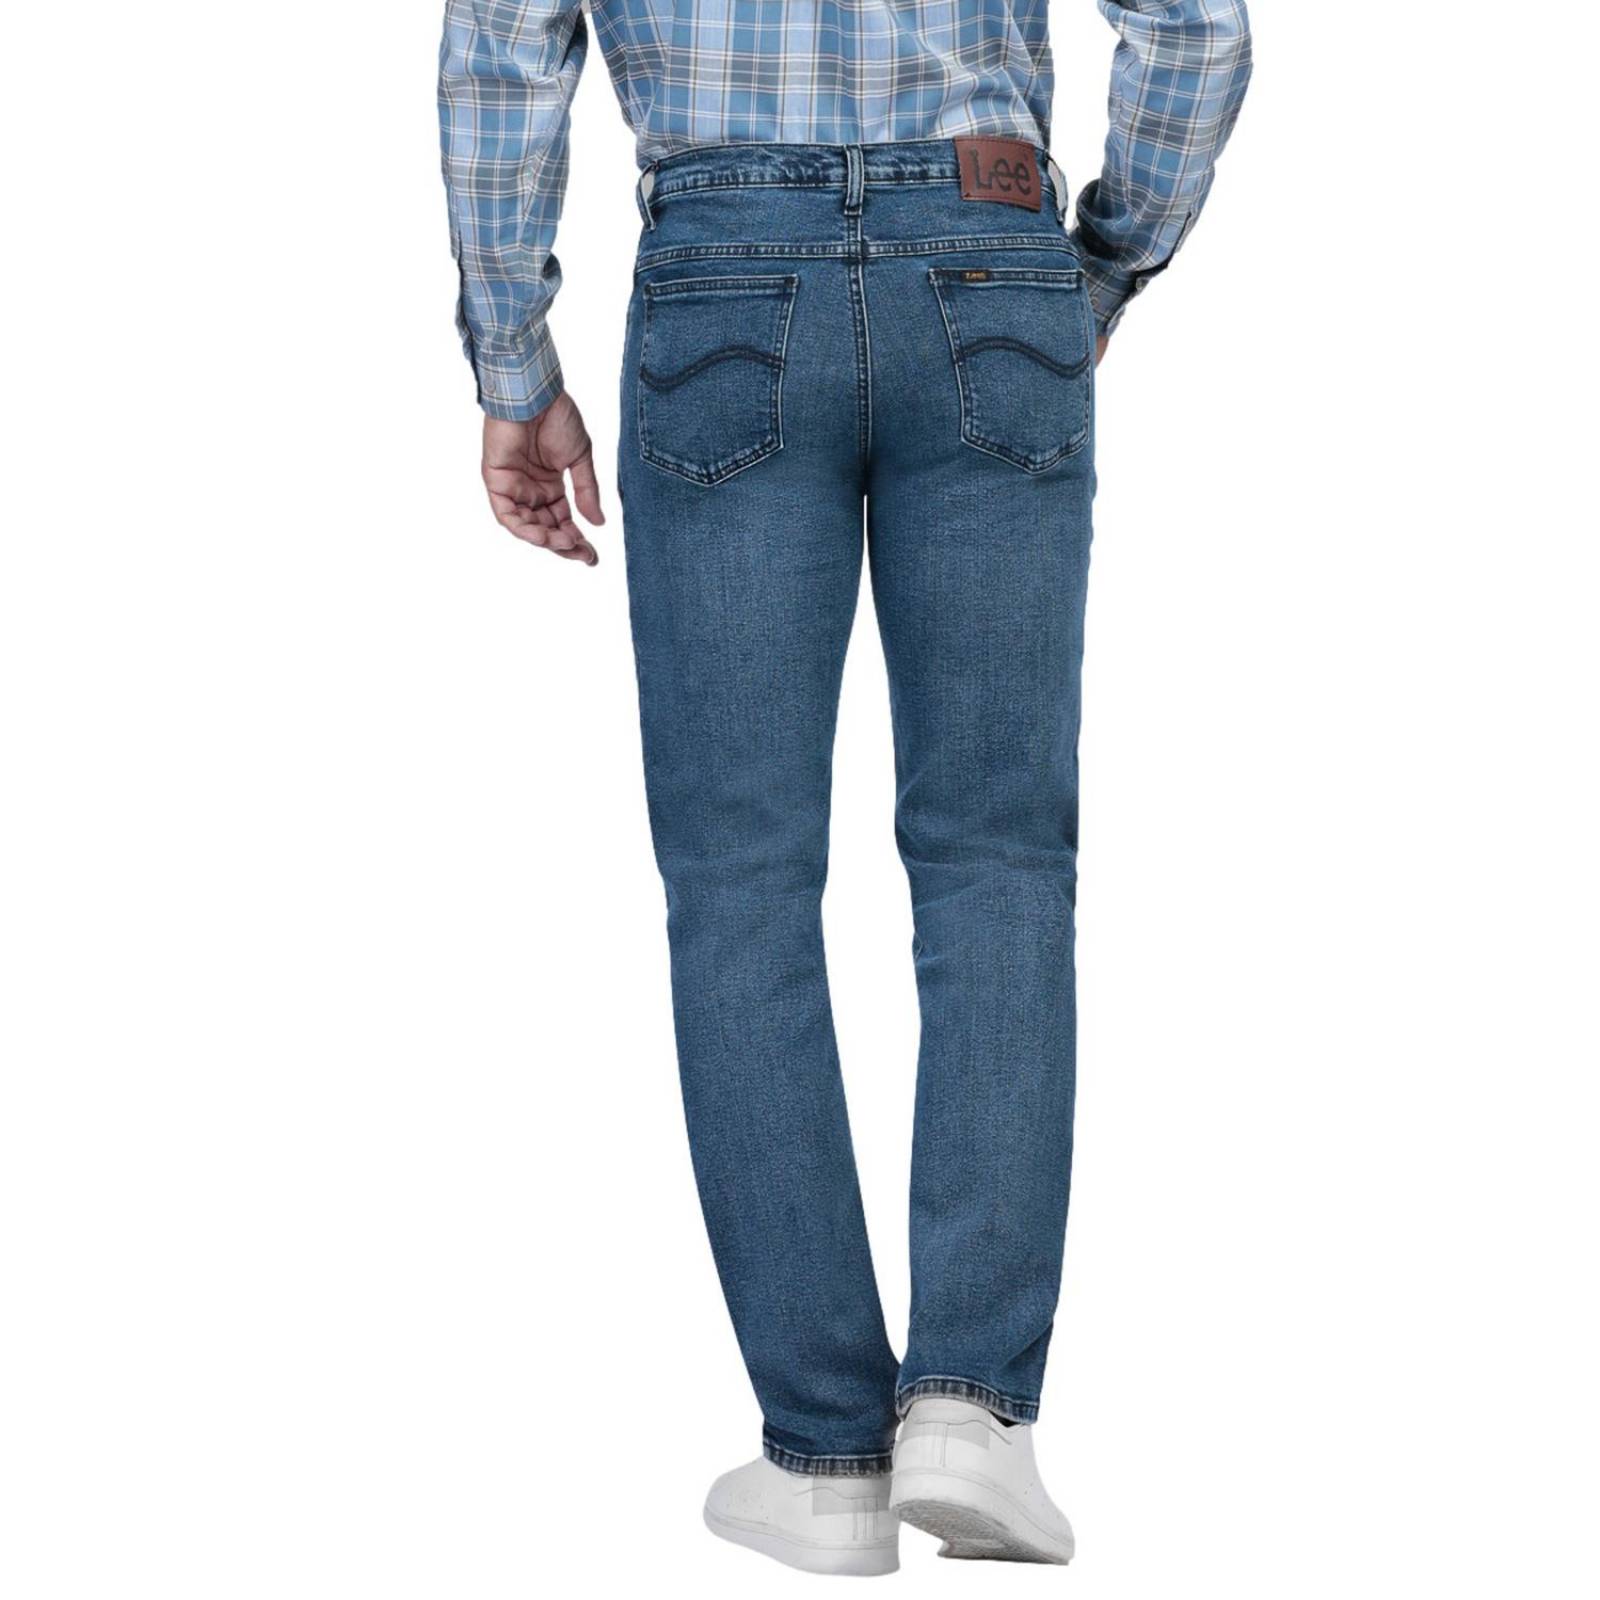 Pantalon Lee Mezclilla Regular Fit Hombre Varios Tonos – Almacenes Tepa